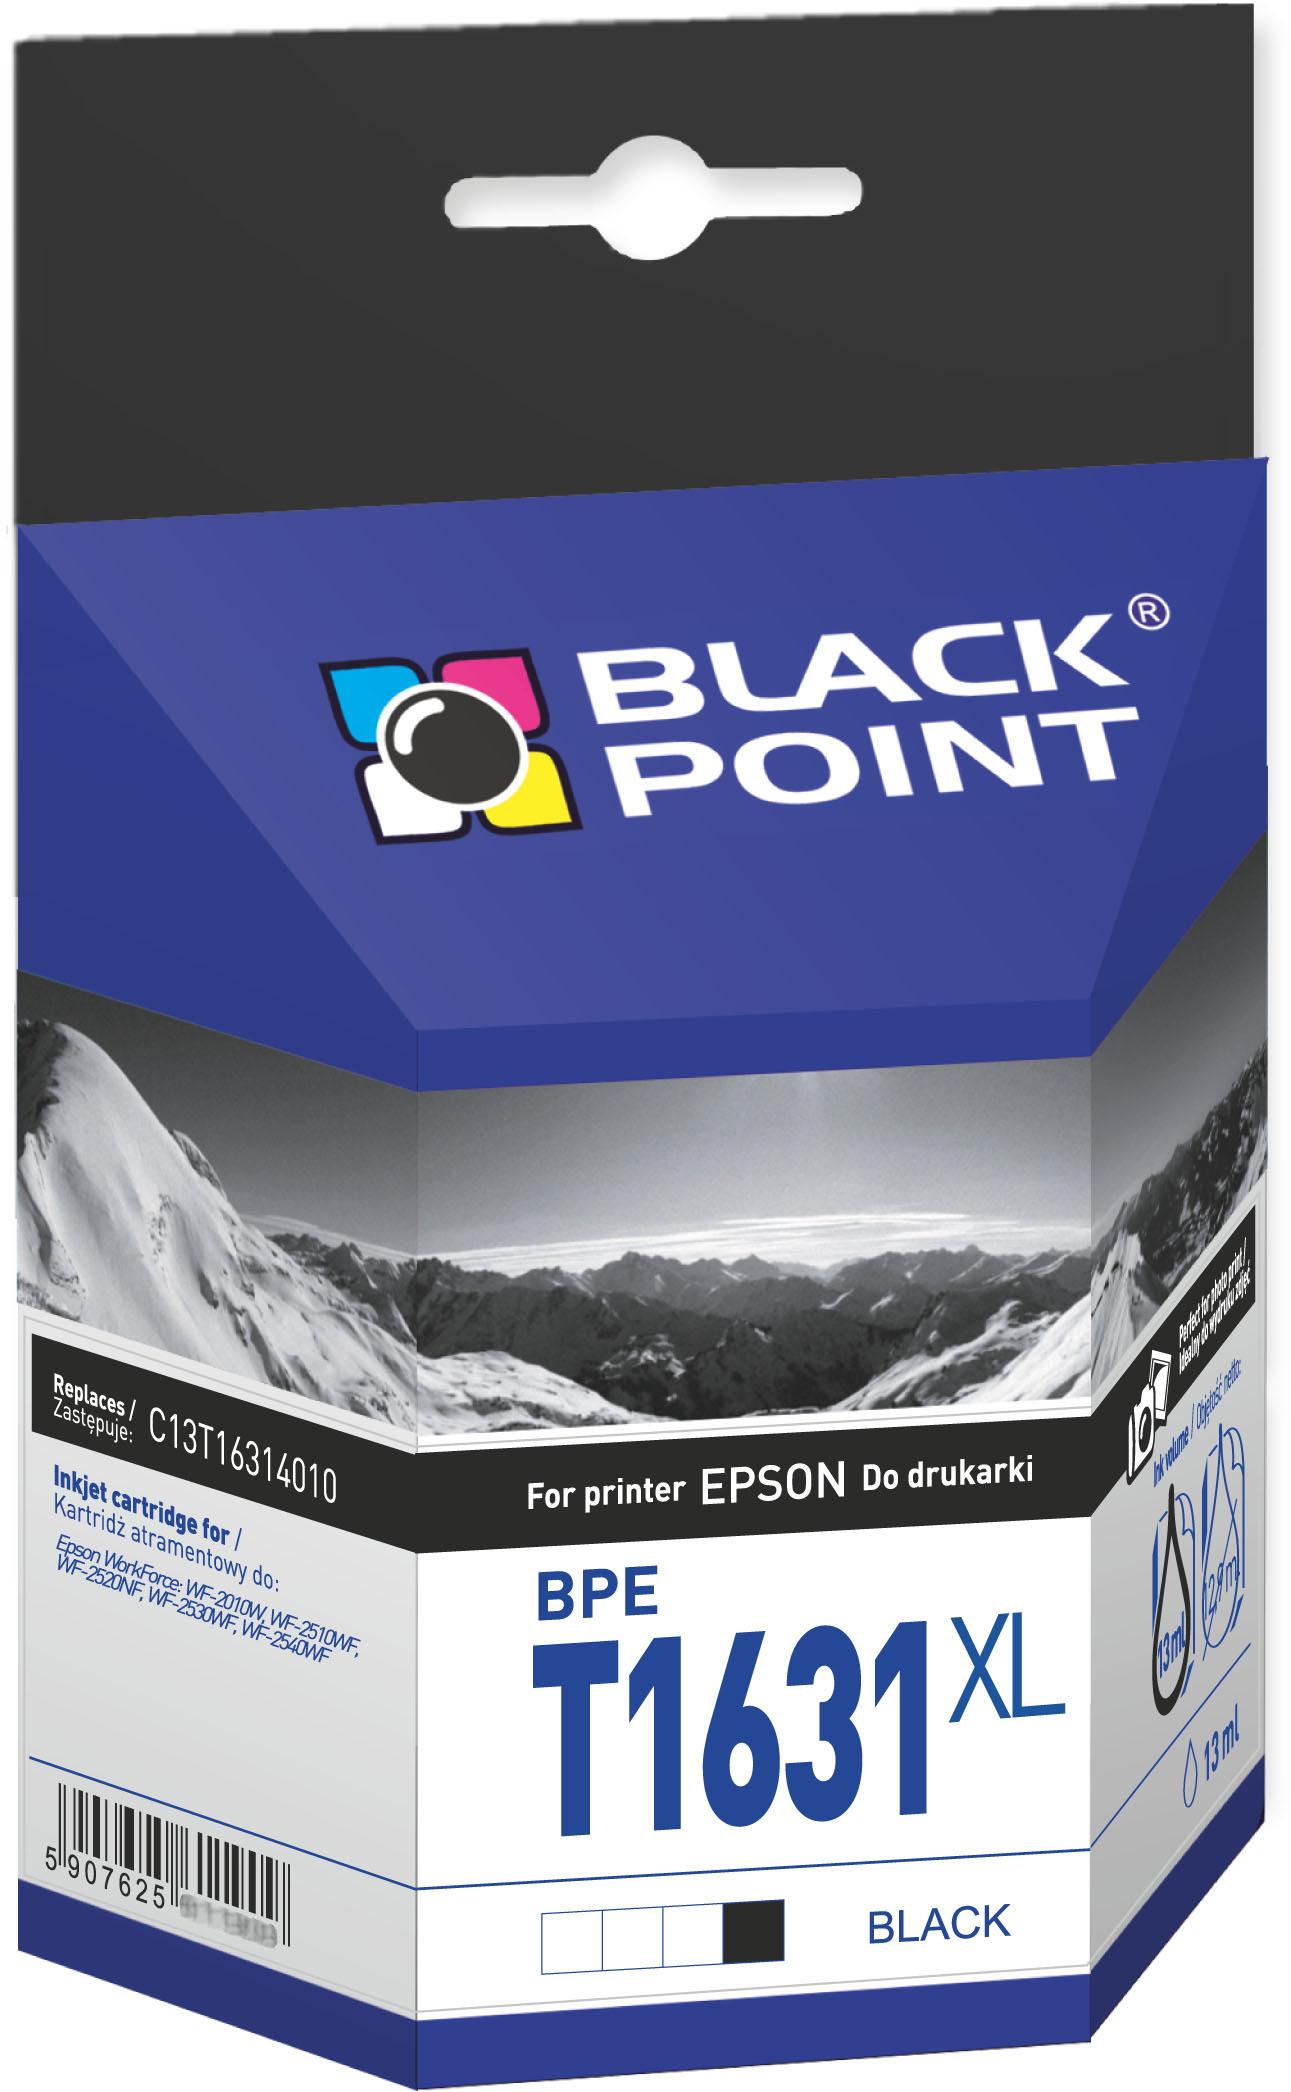 CMYK - Black Point tusz BPET1631XL zastpuje Epson C13T16314010, czarny